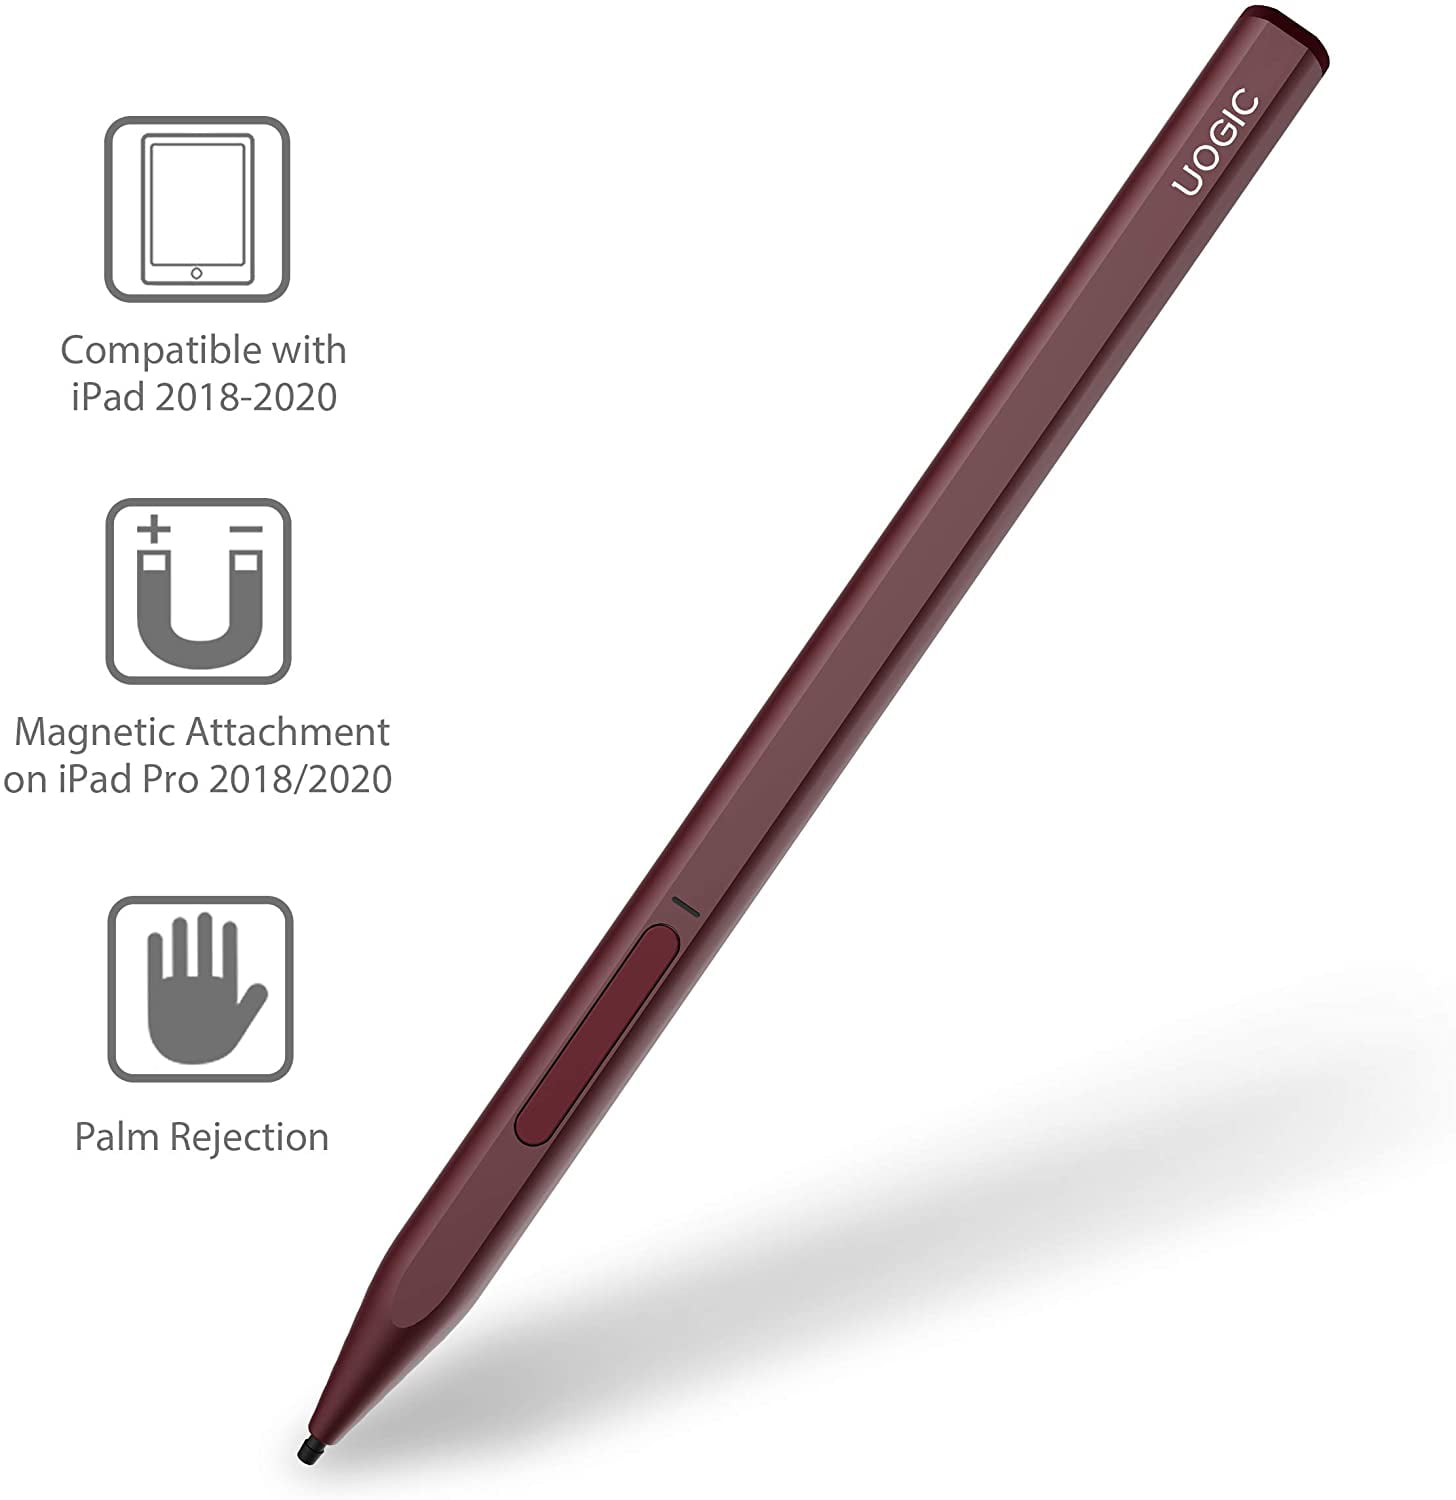 uogic stylus pen compatibility